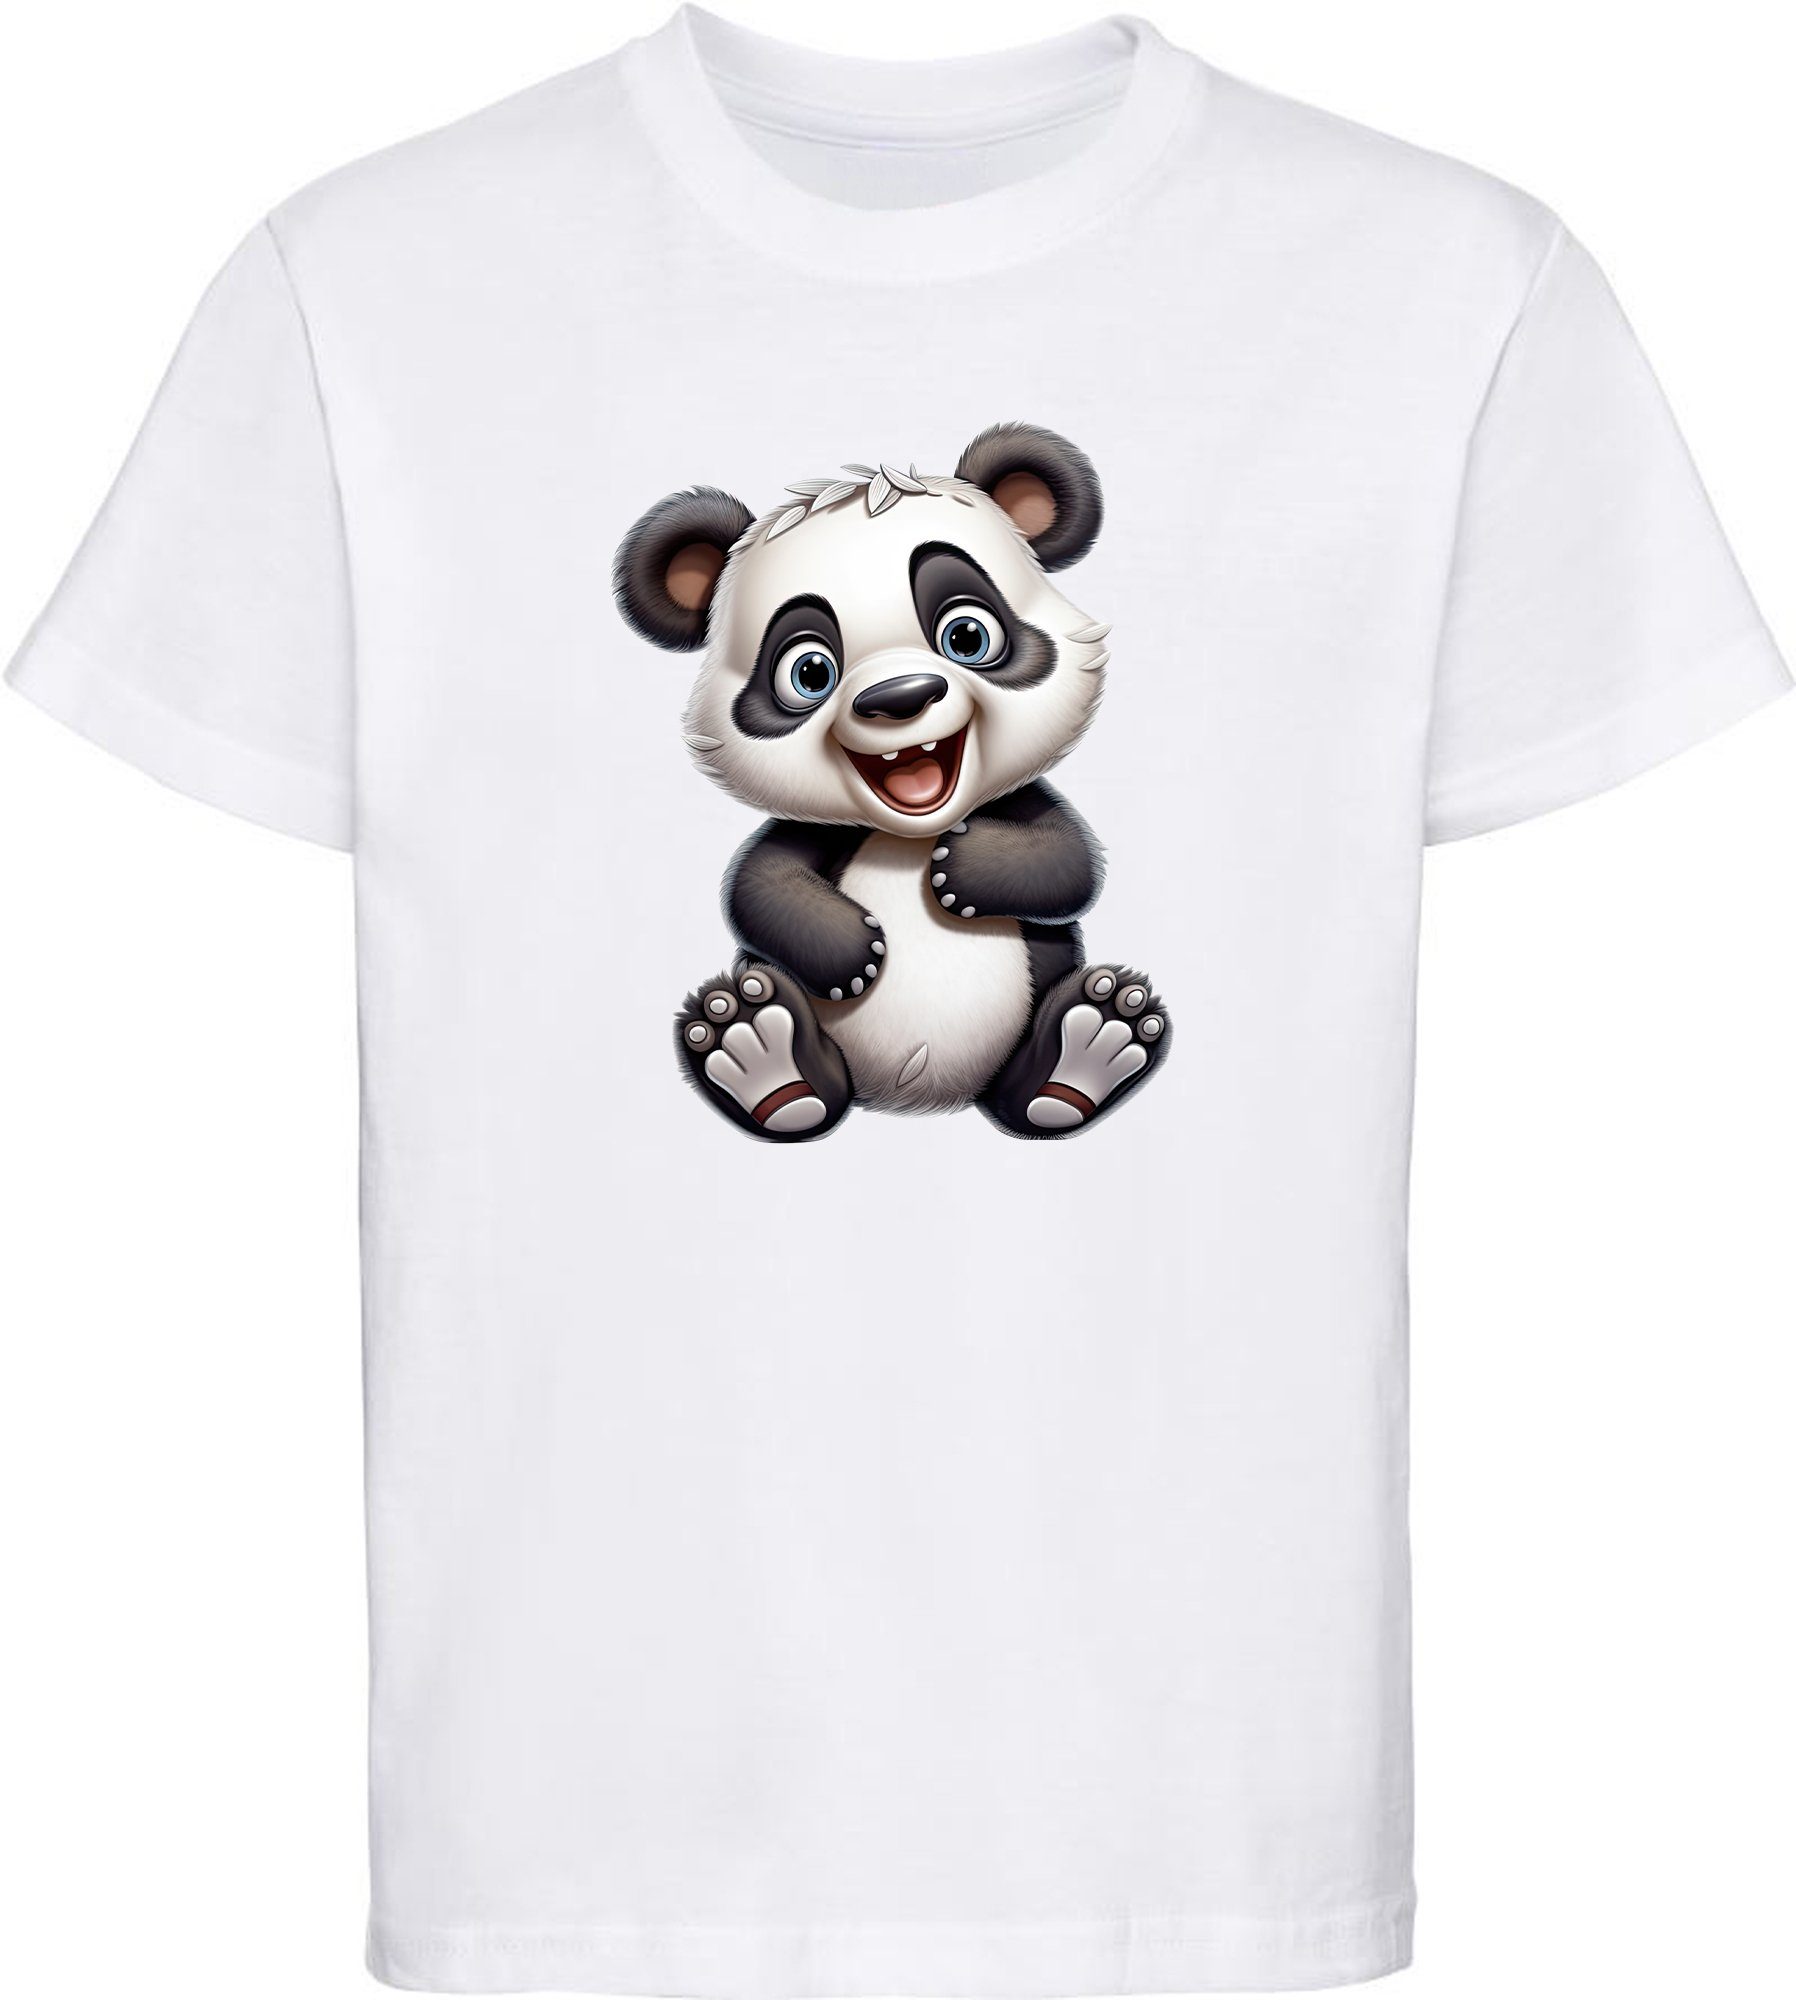 MyDesign24 T-Shirt Kinder Wildtier Print Shirt bedruckt - Baby Panda Bär Baumwollshirt mit Aufdruck, i277 weiss